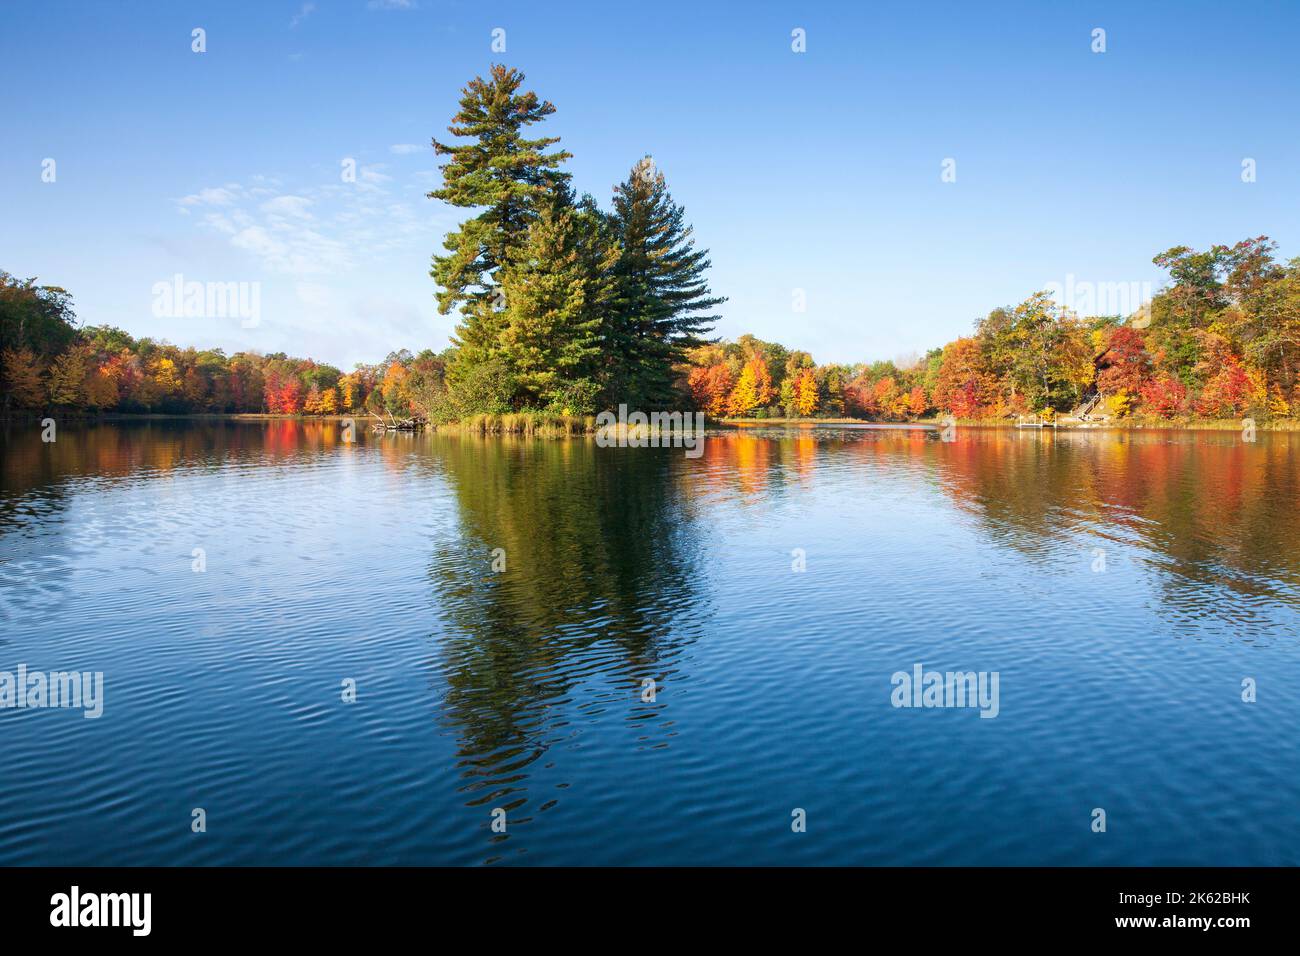 Schöner blauer See mit Bäumen in Herbstfarbe und einer kleinen Insel an einem hellen Morgen Stockfoto